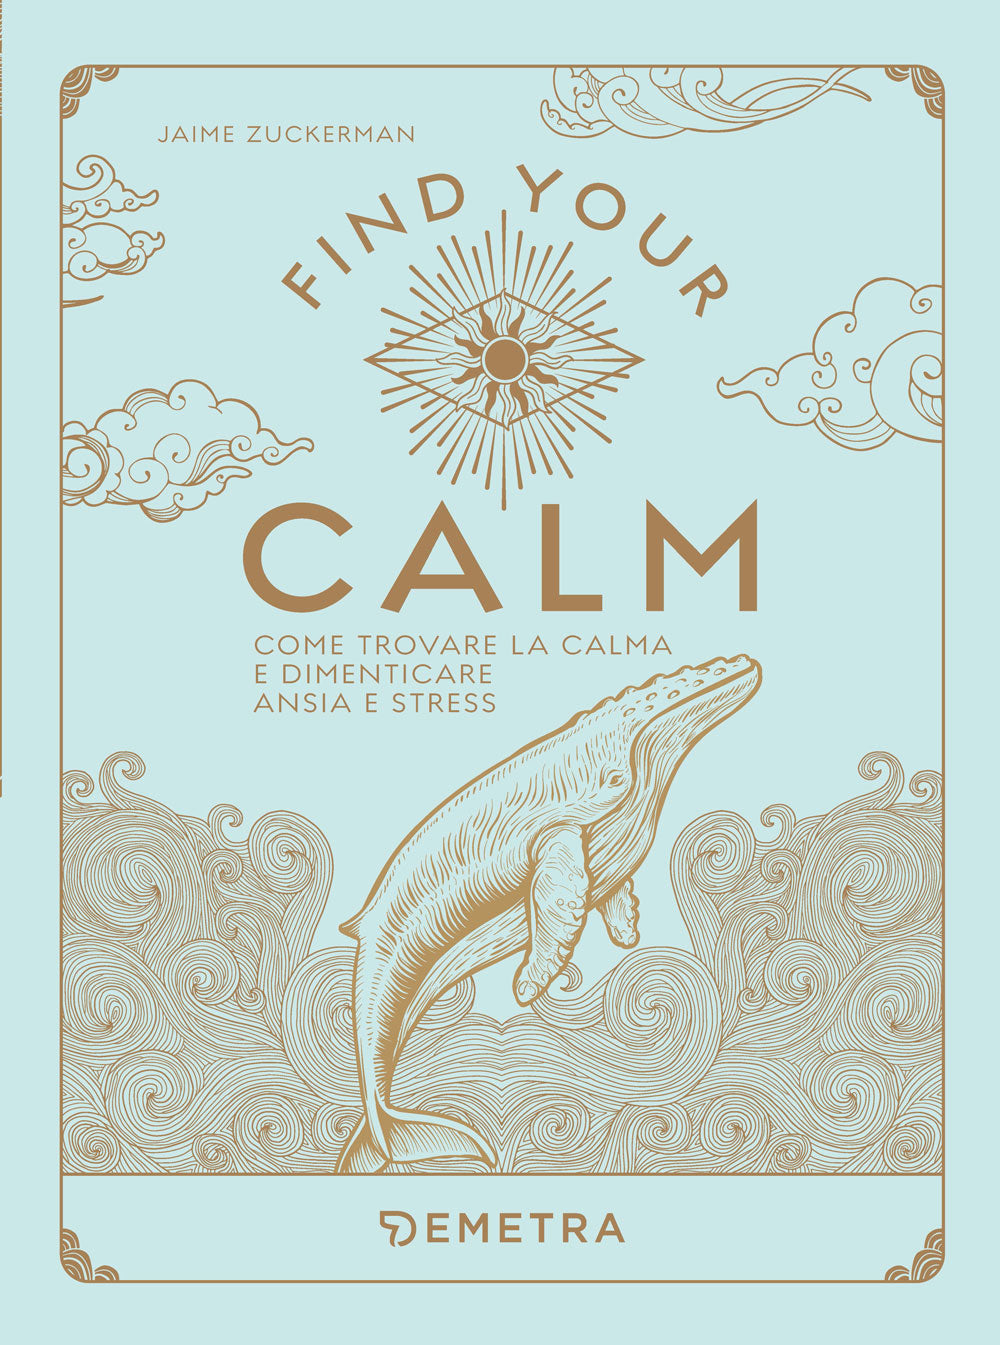 Find your Calm::Come trovare la calma e dimenticare ansia e stress